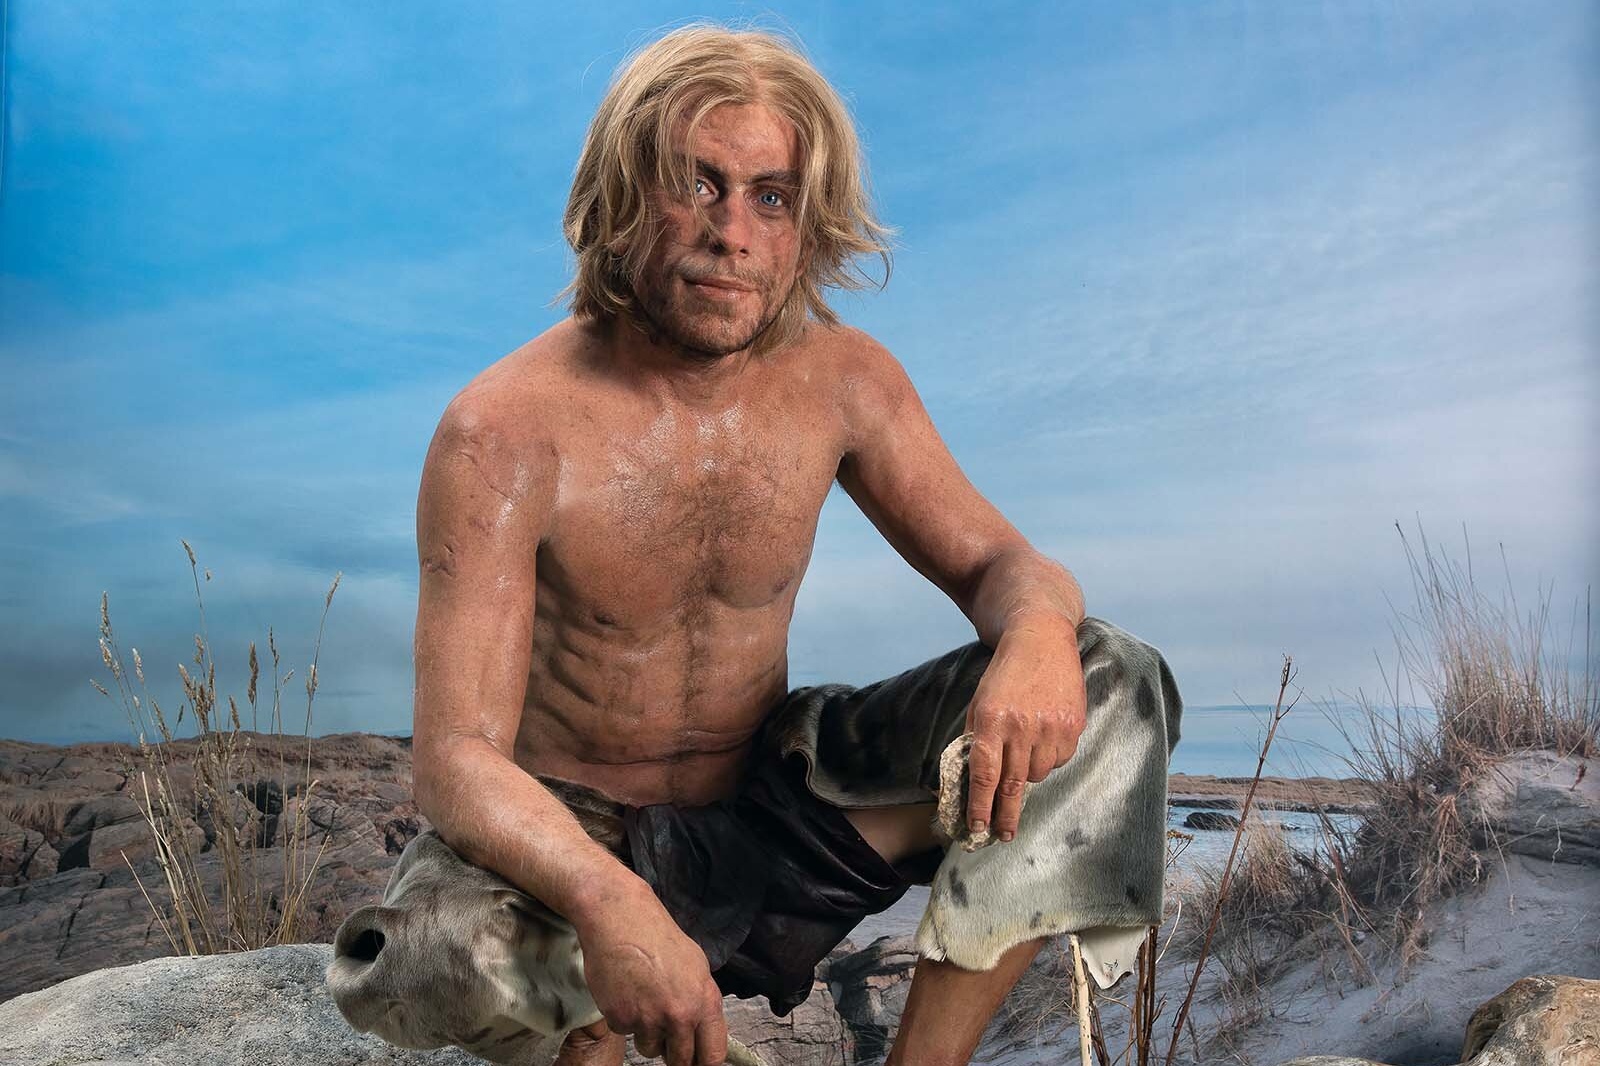 Le visage d’un homme de l’âge de pierre qui s’est noyé il y a 4 000 ans révélé